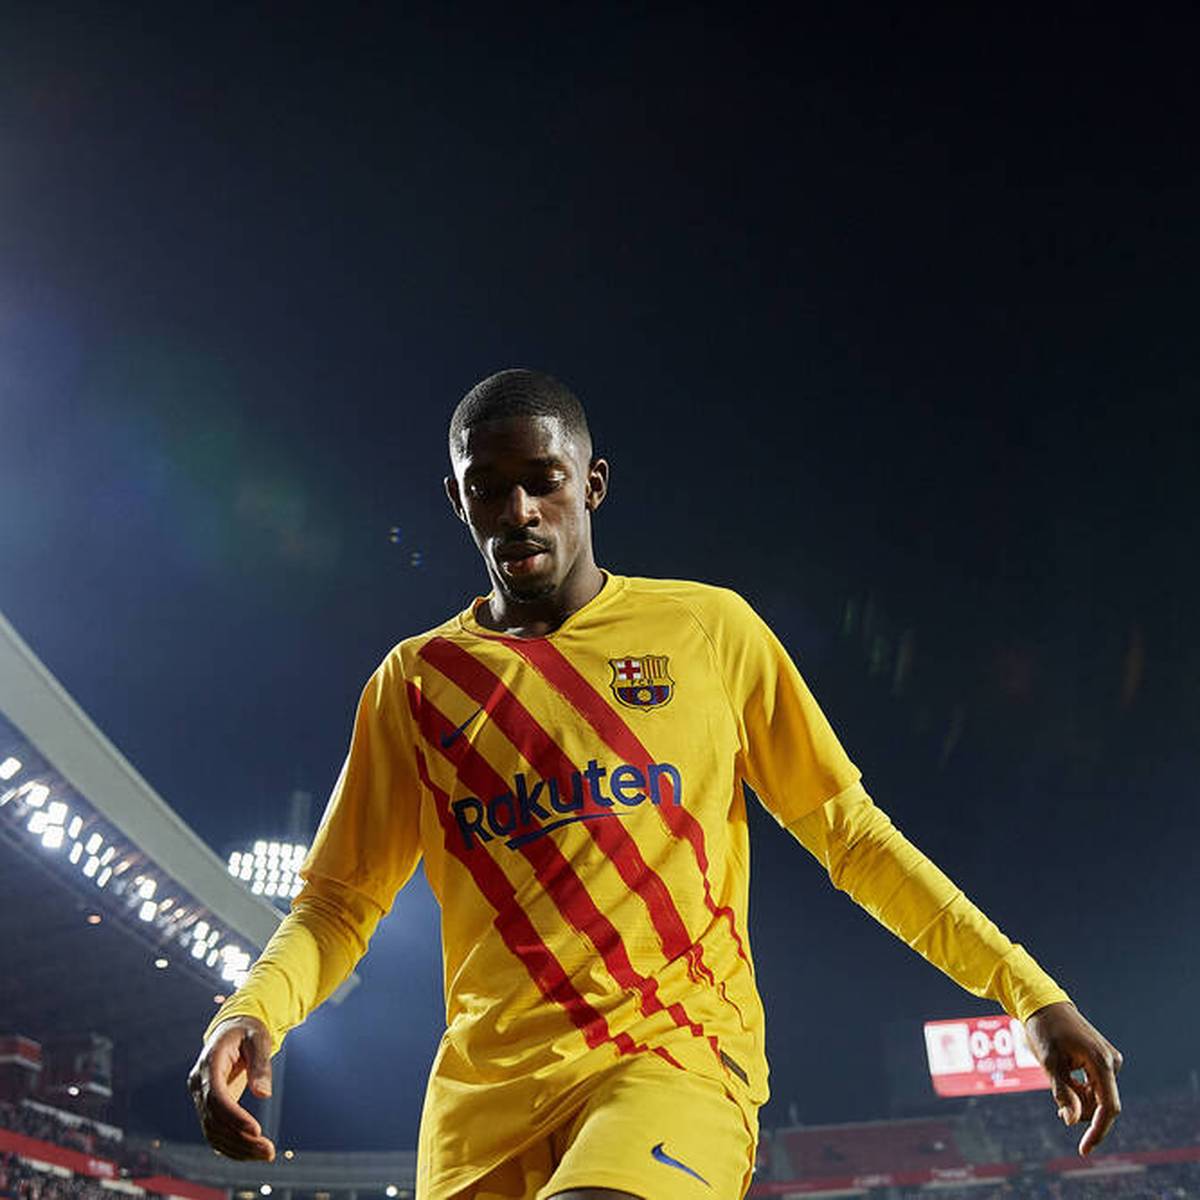 Der Vertrag von Ousmane Dembélé beim FC Barcelona läuft im kommenden Sommer aus. Die Vertragsverhandlungen scheinen sich zu einer Schlammschlacht zu entwickeln.